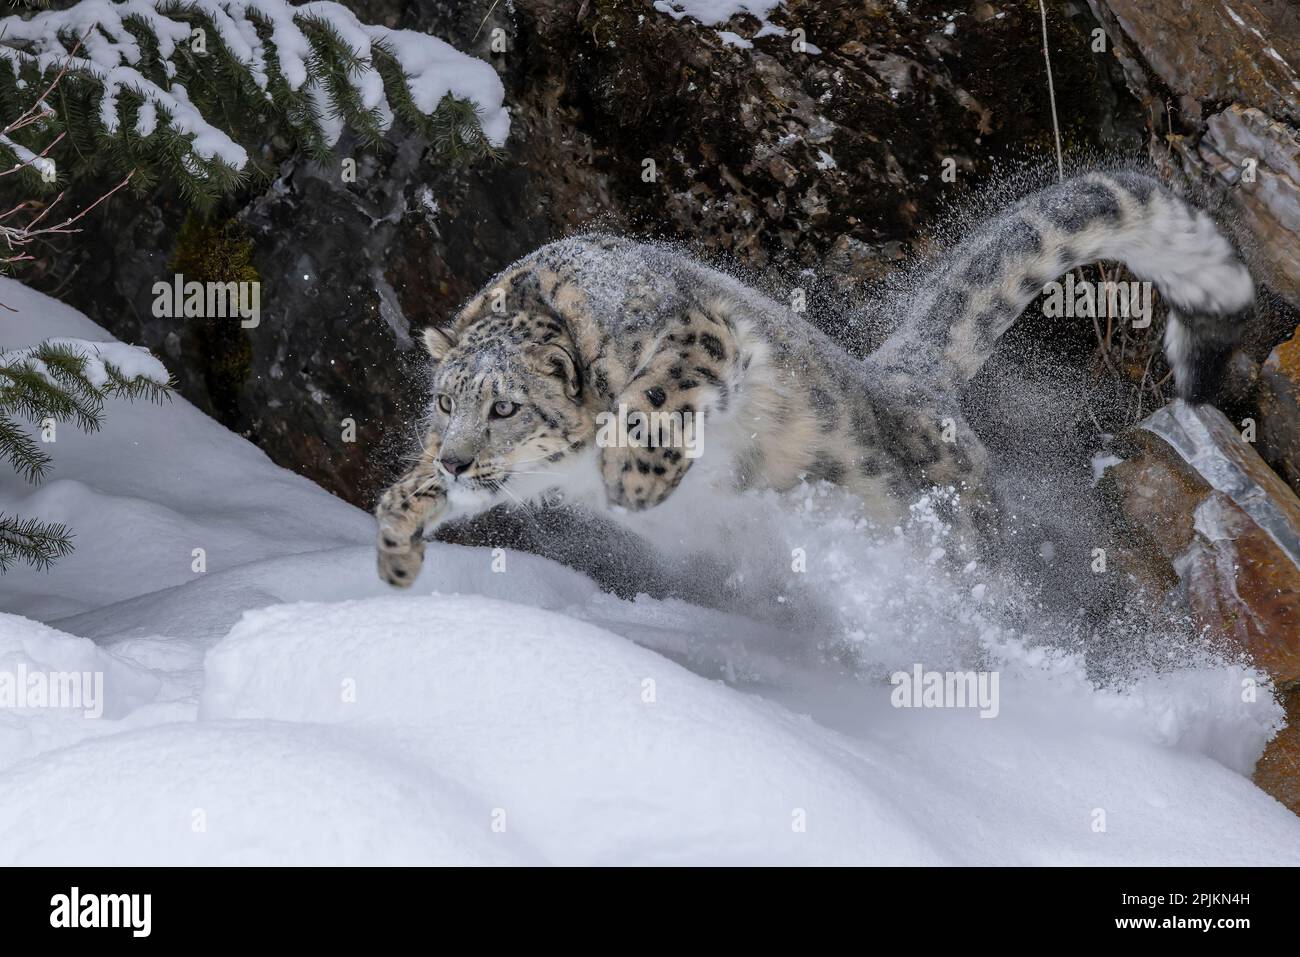 USA, Montana. Springender Schneeleopard im Winter. Stockfoto